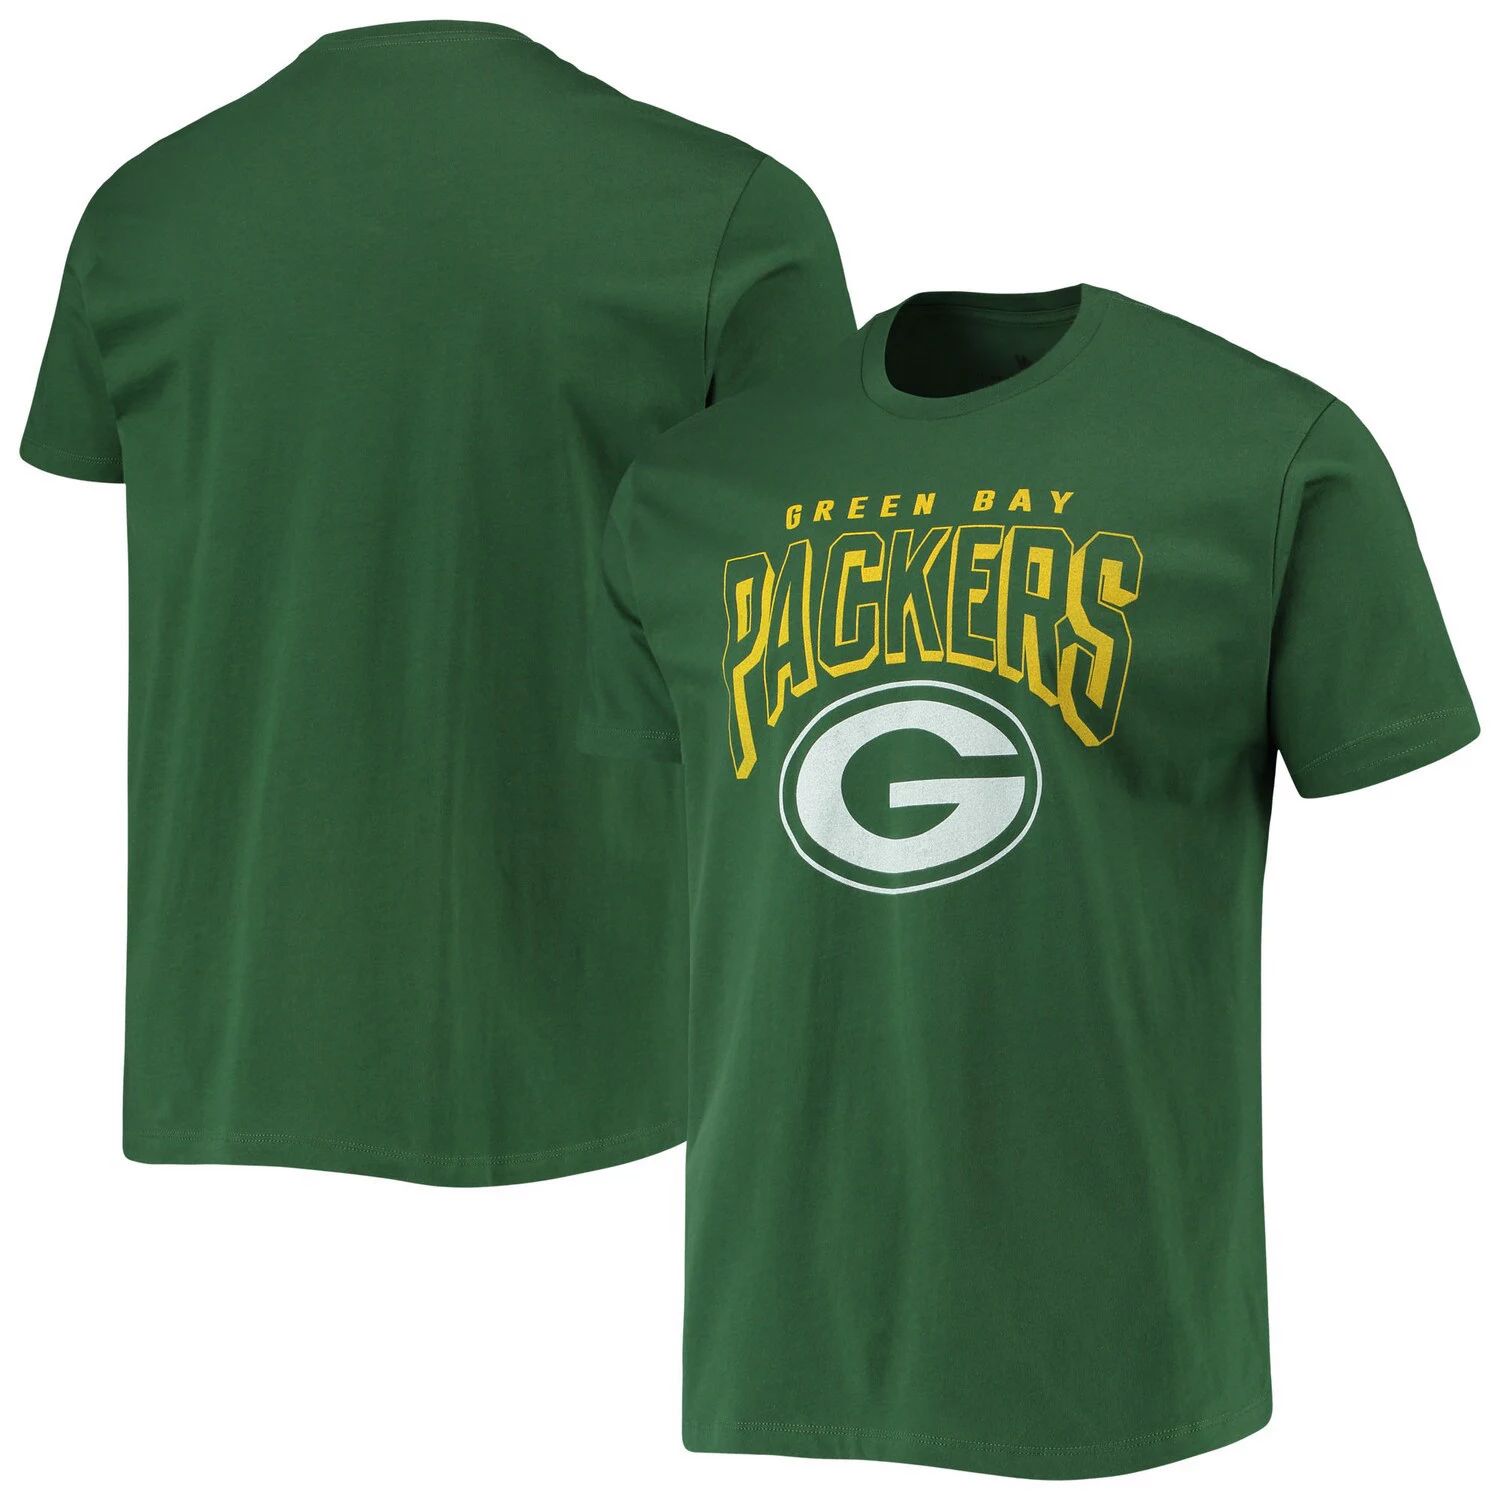 Мужская зеленая футболка с ярким логотипом Green Bay Packers Junk Food